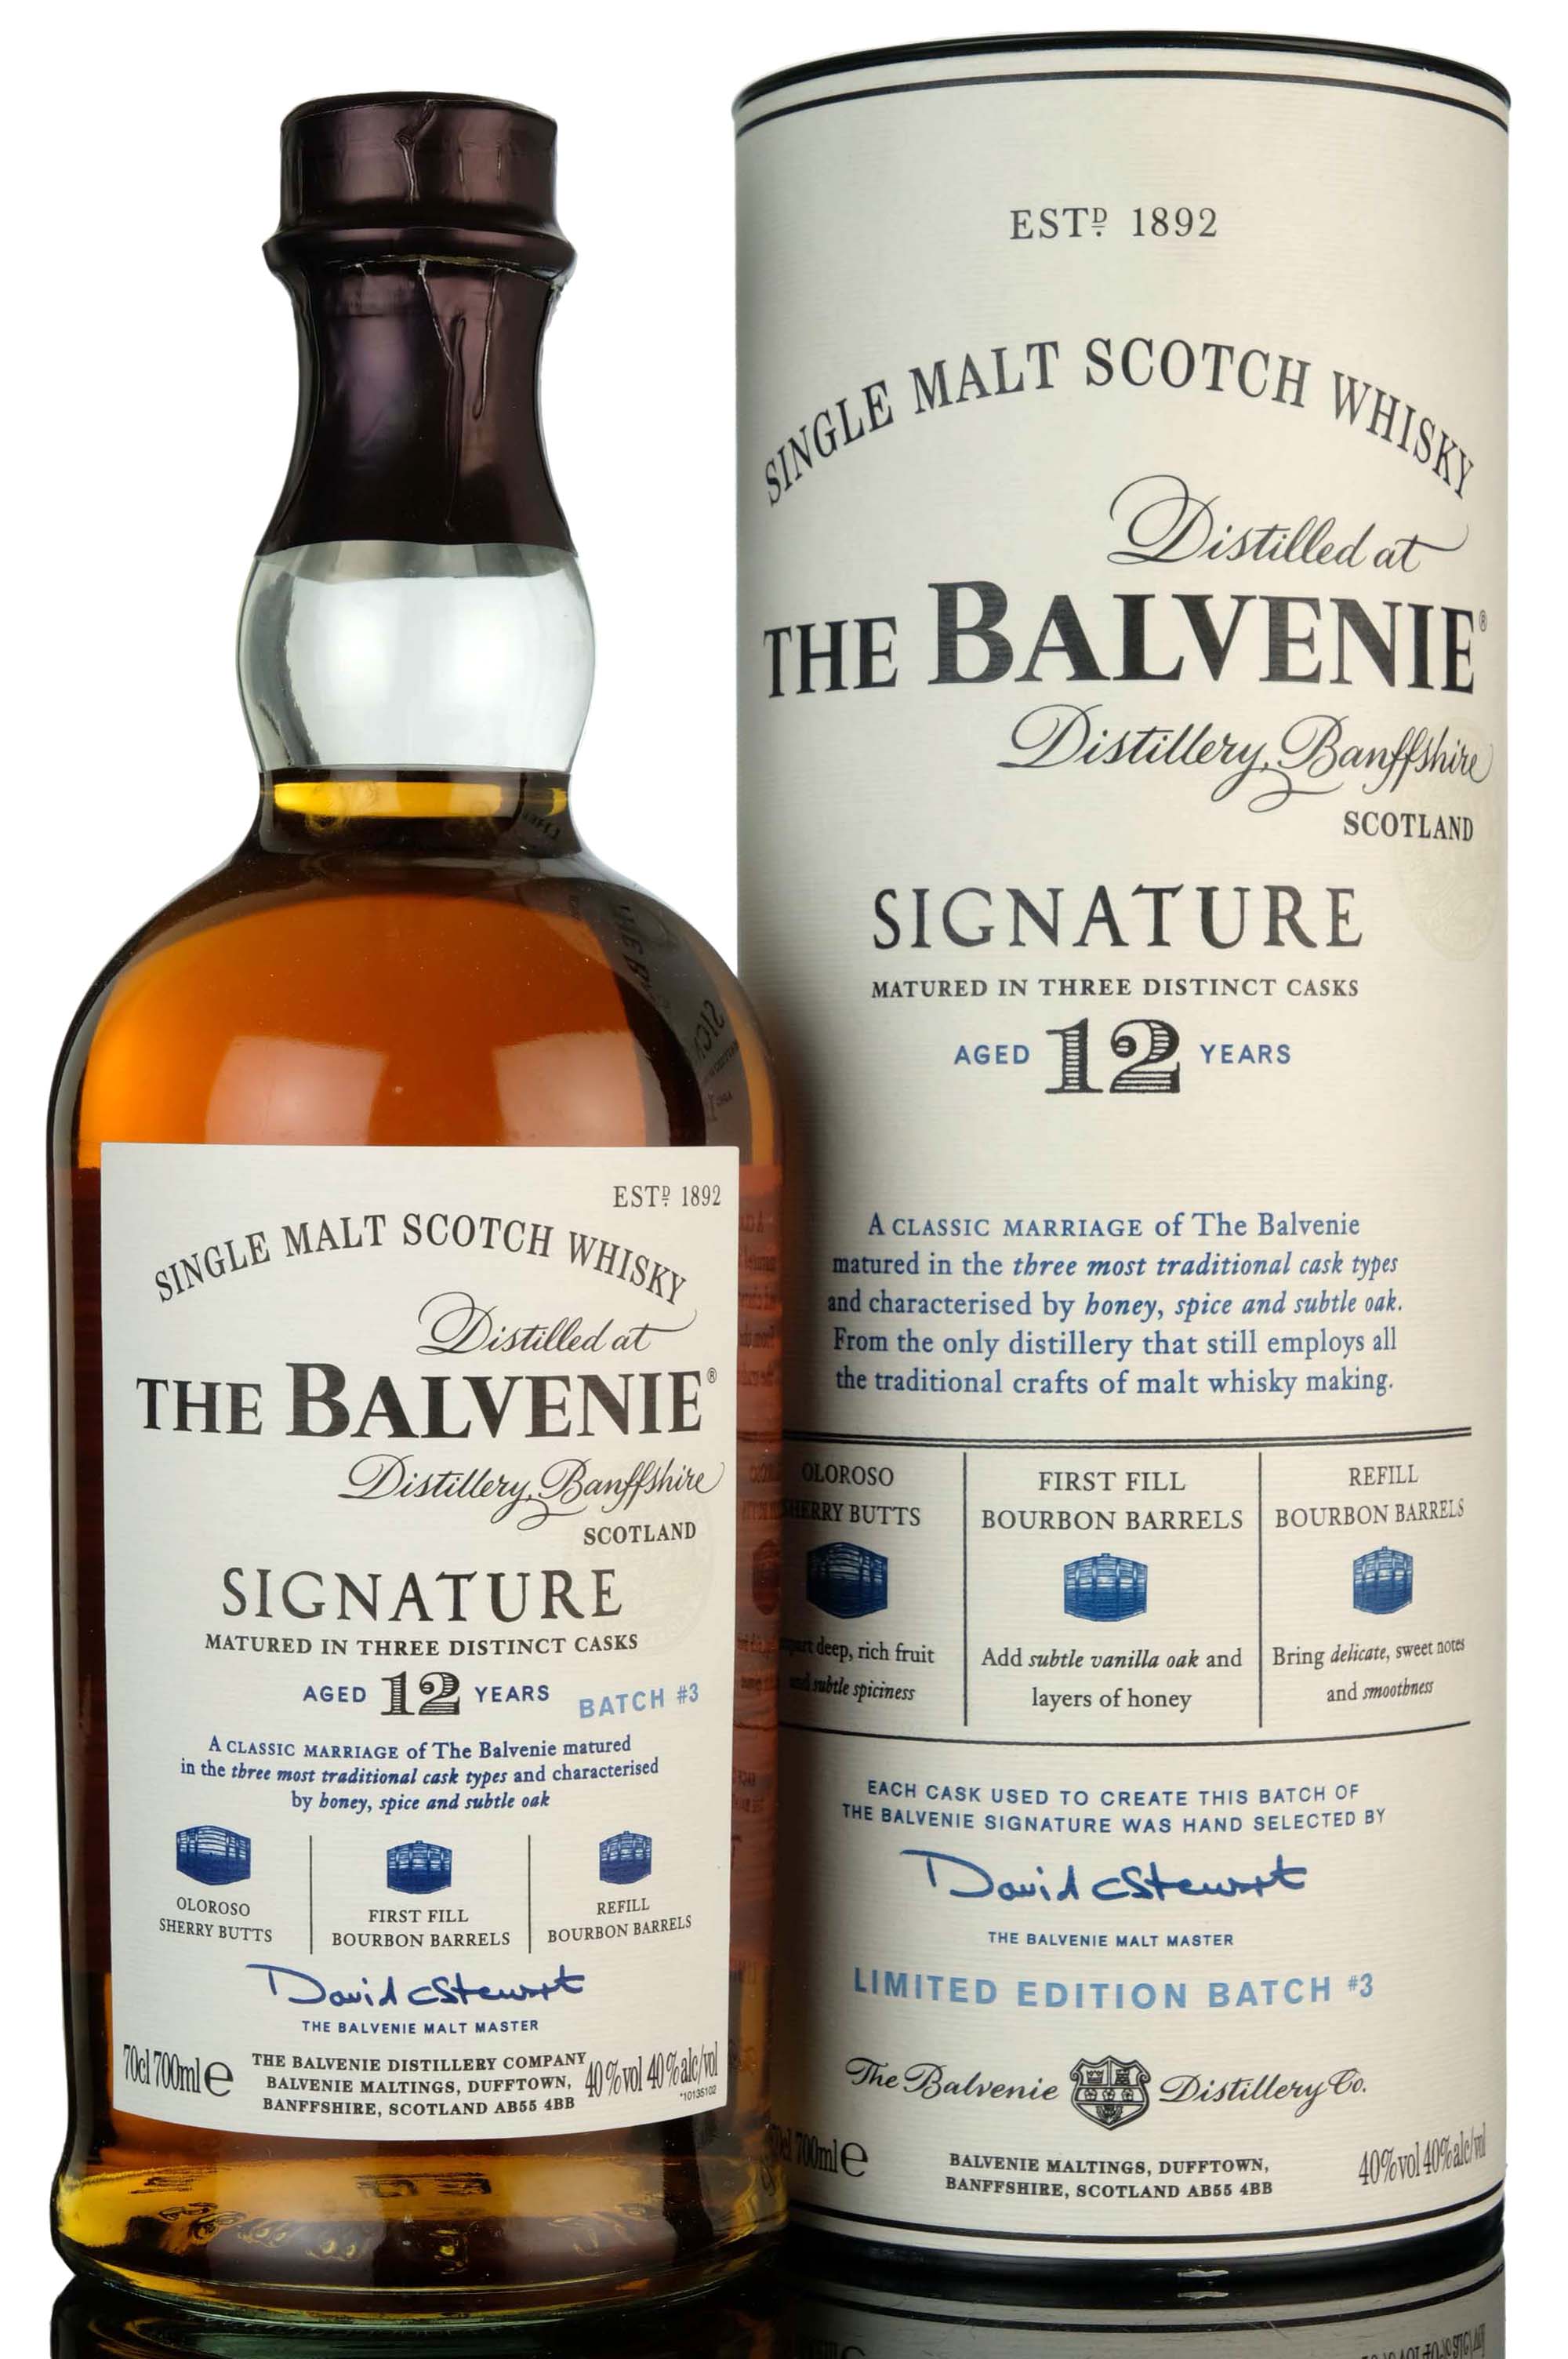 Balvenie 12 Year Old - Signature Batch 3 - 2010 Release